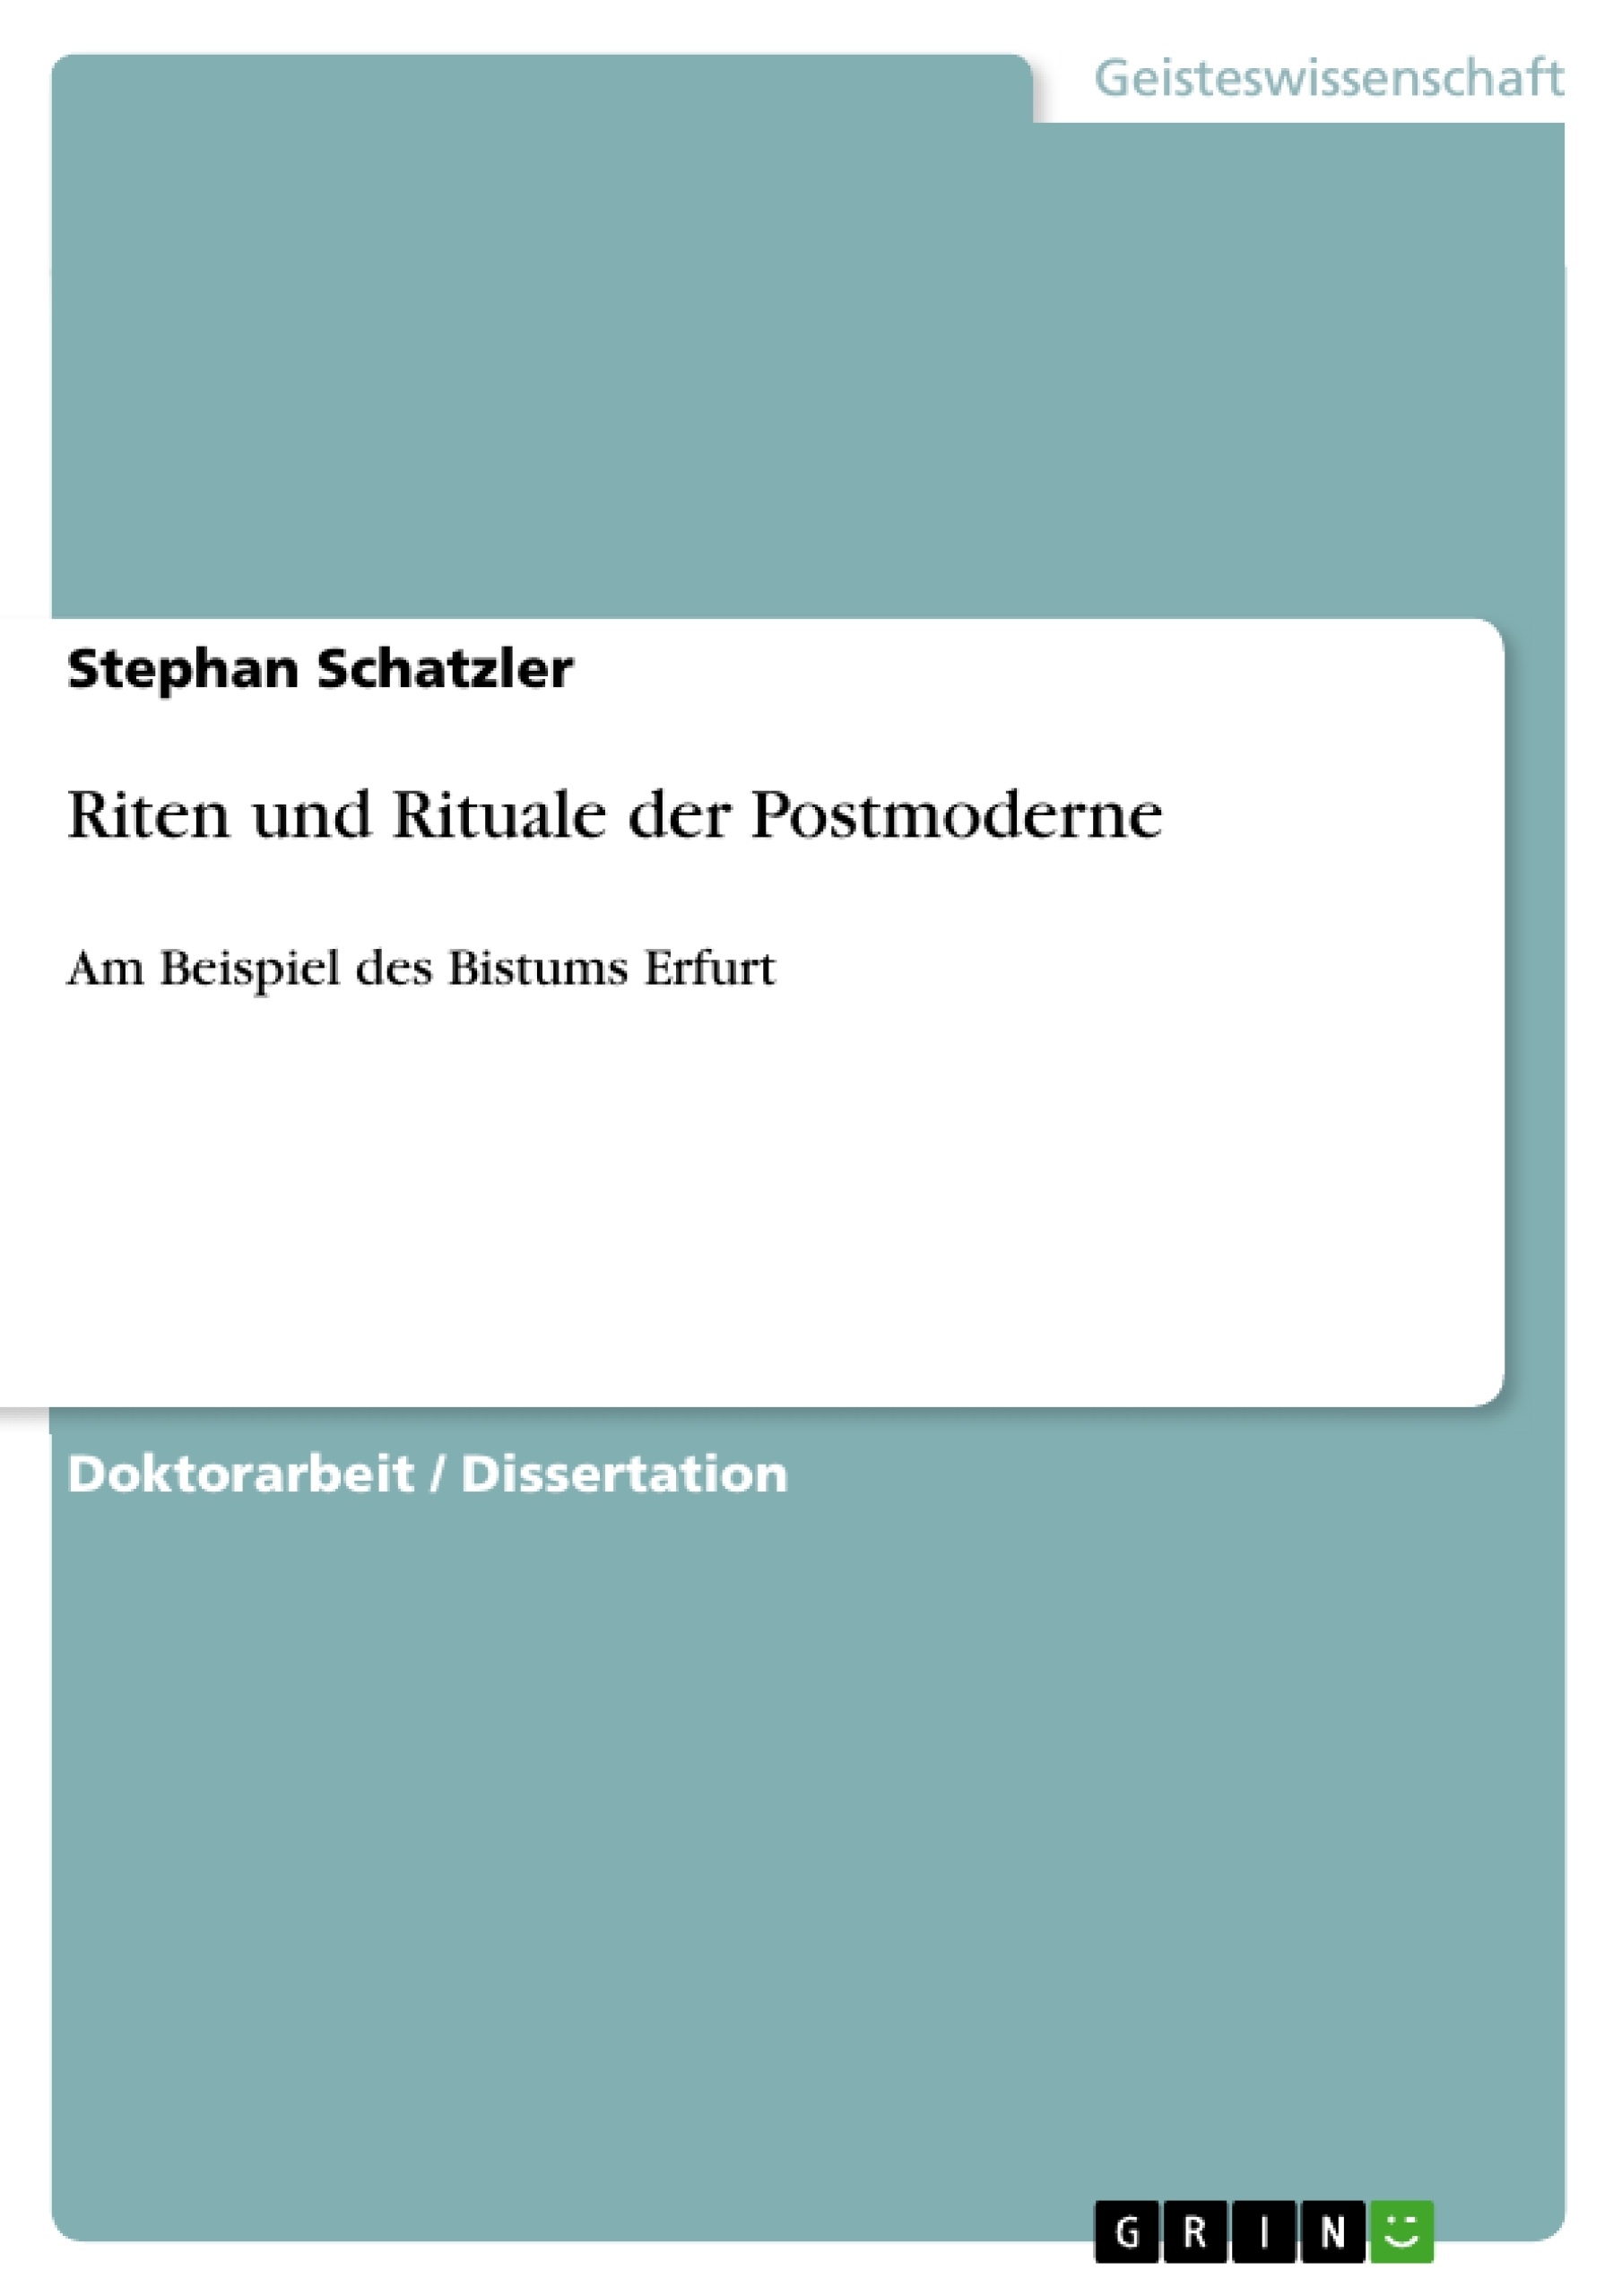 Title: Riten und Rituale der Postmoderne